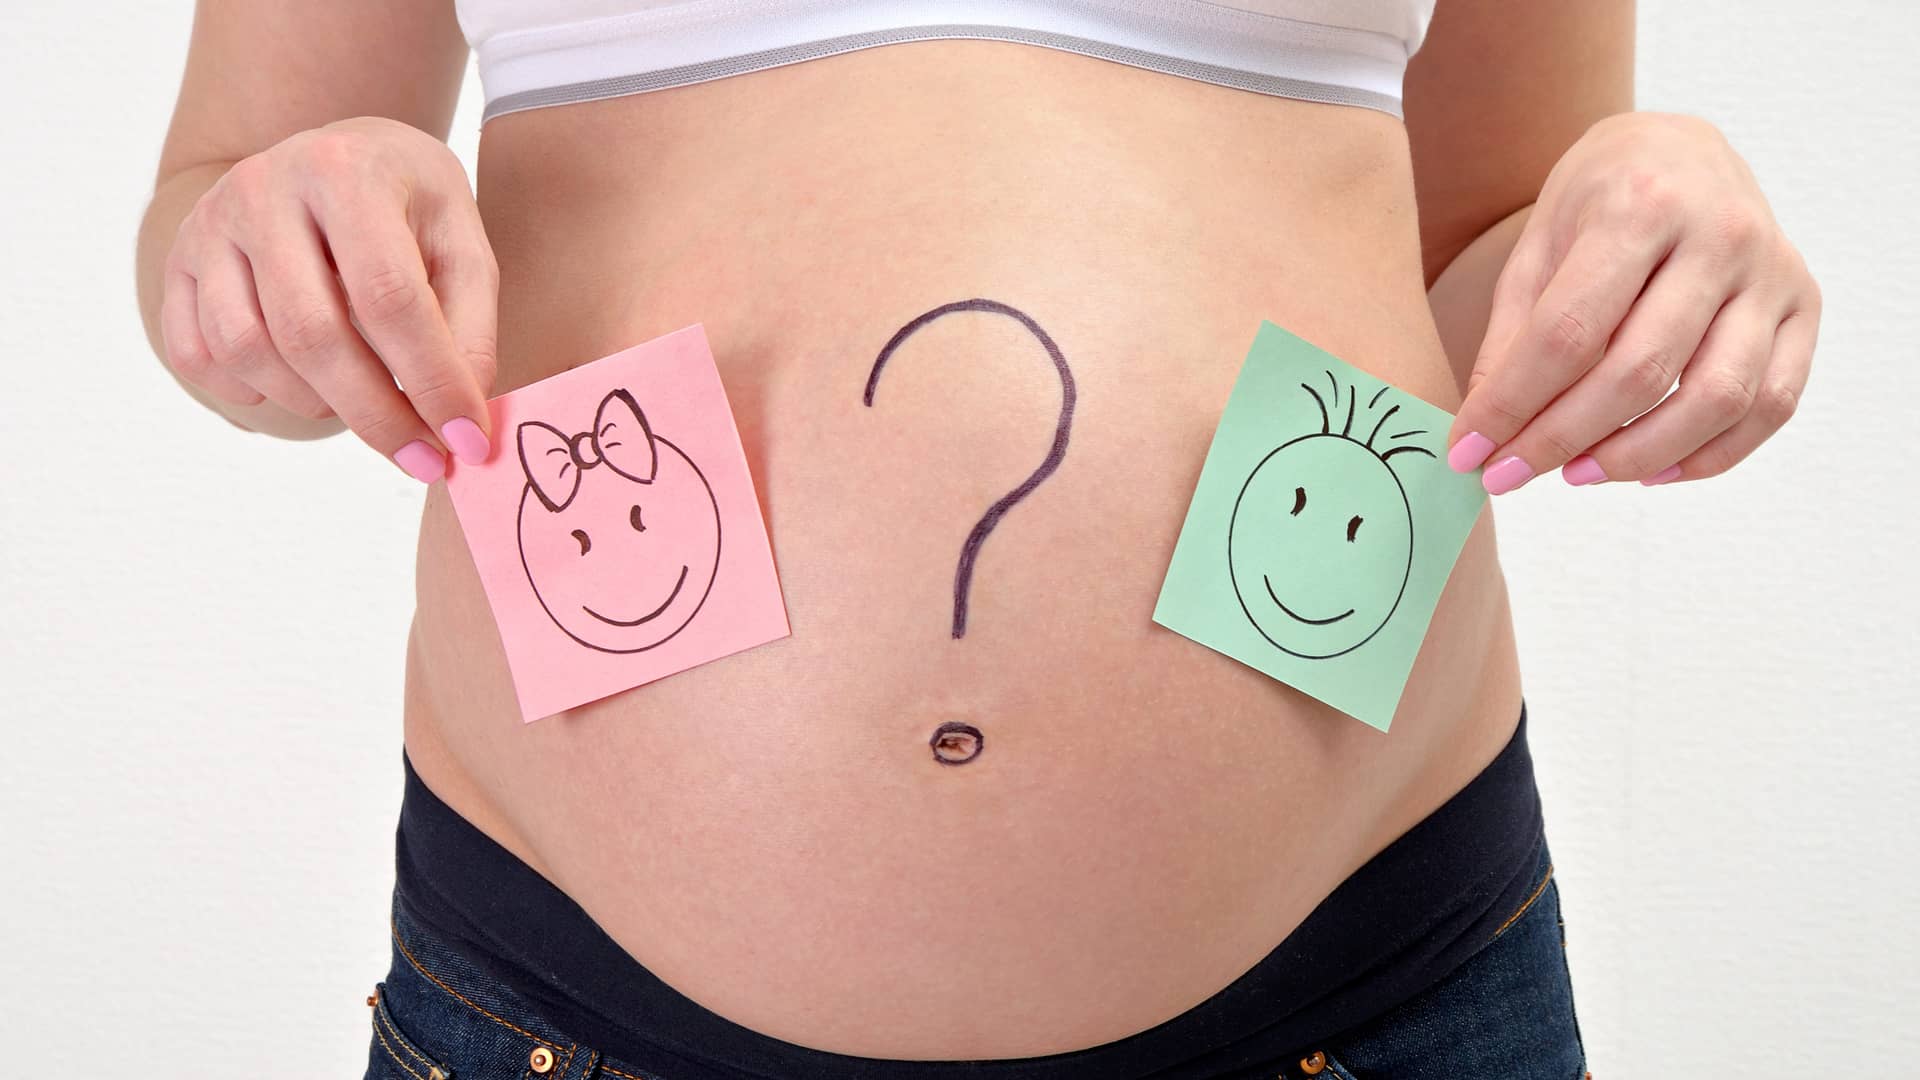 mujer con un simbolo de interrogacion en la barriga porque aun no sabe el sexo del bebe